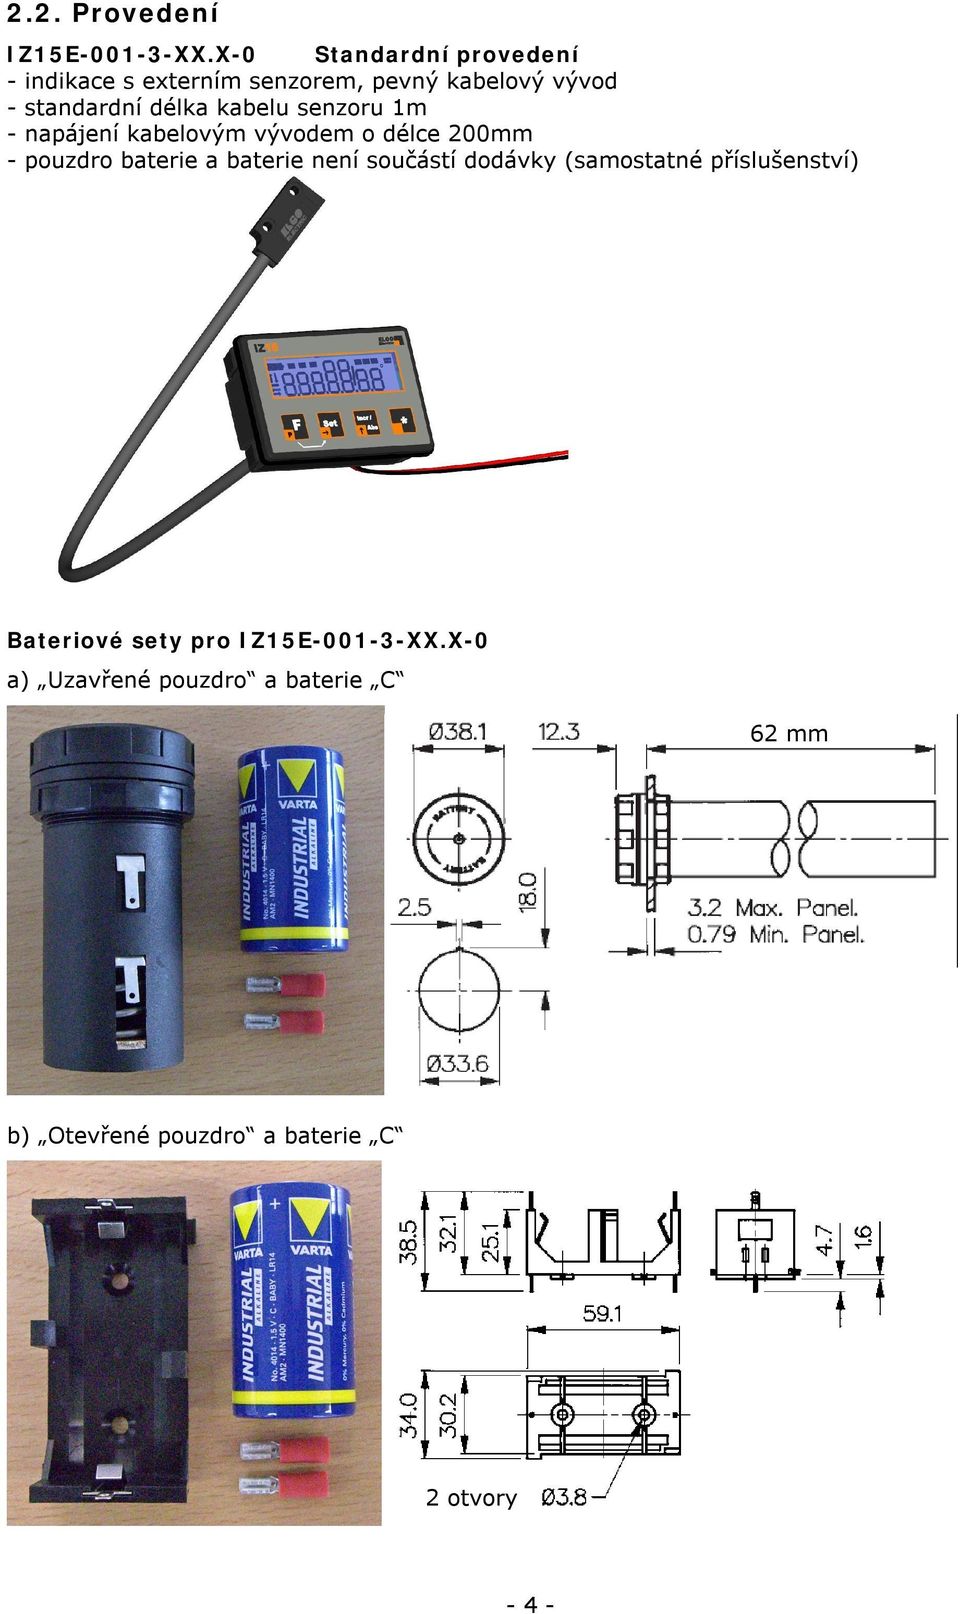 kabelu senzoru 1m - napájení kabelovým vývodem o délce 200mm - pouzdro baterie a baterie není